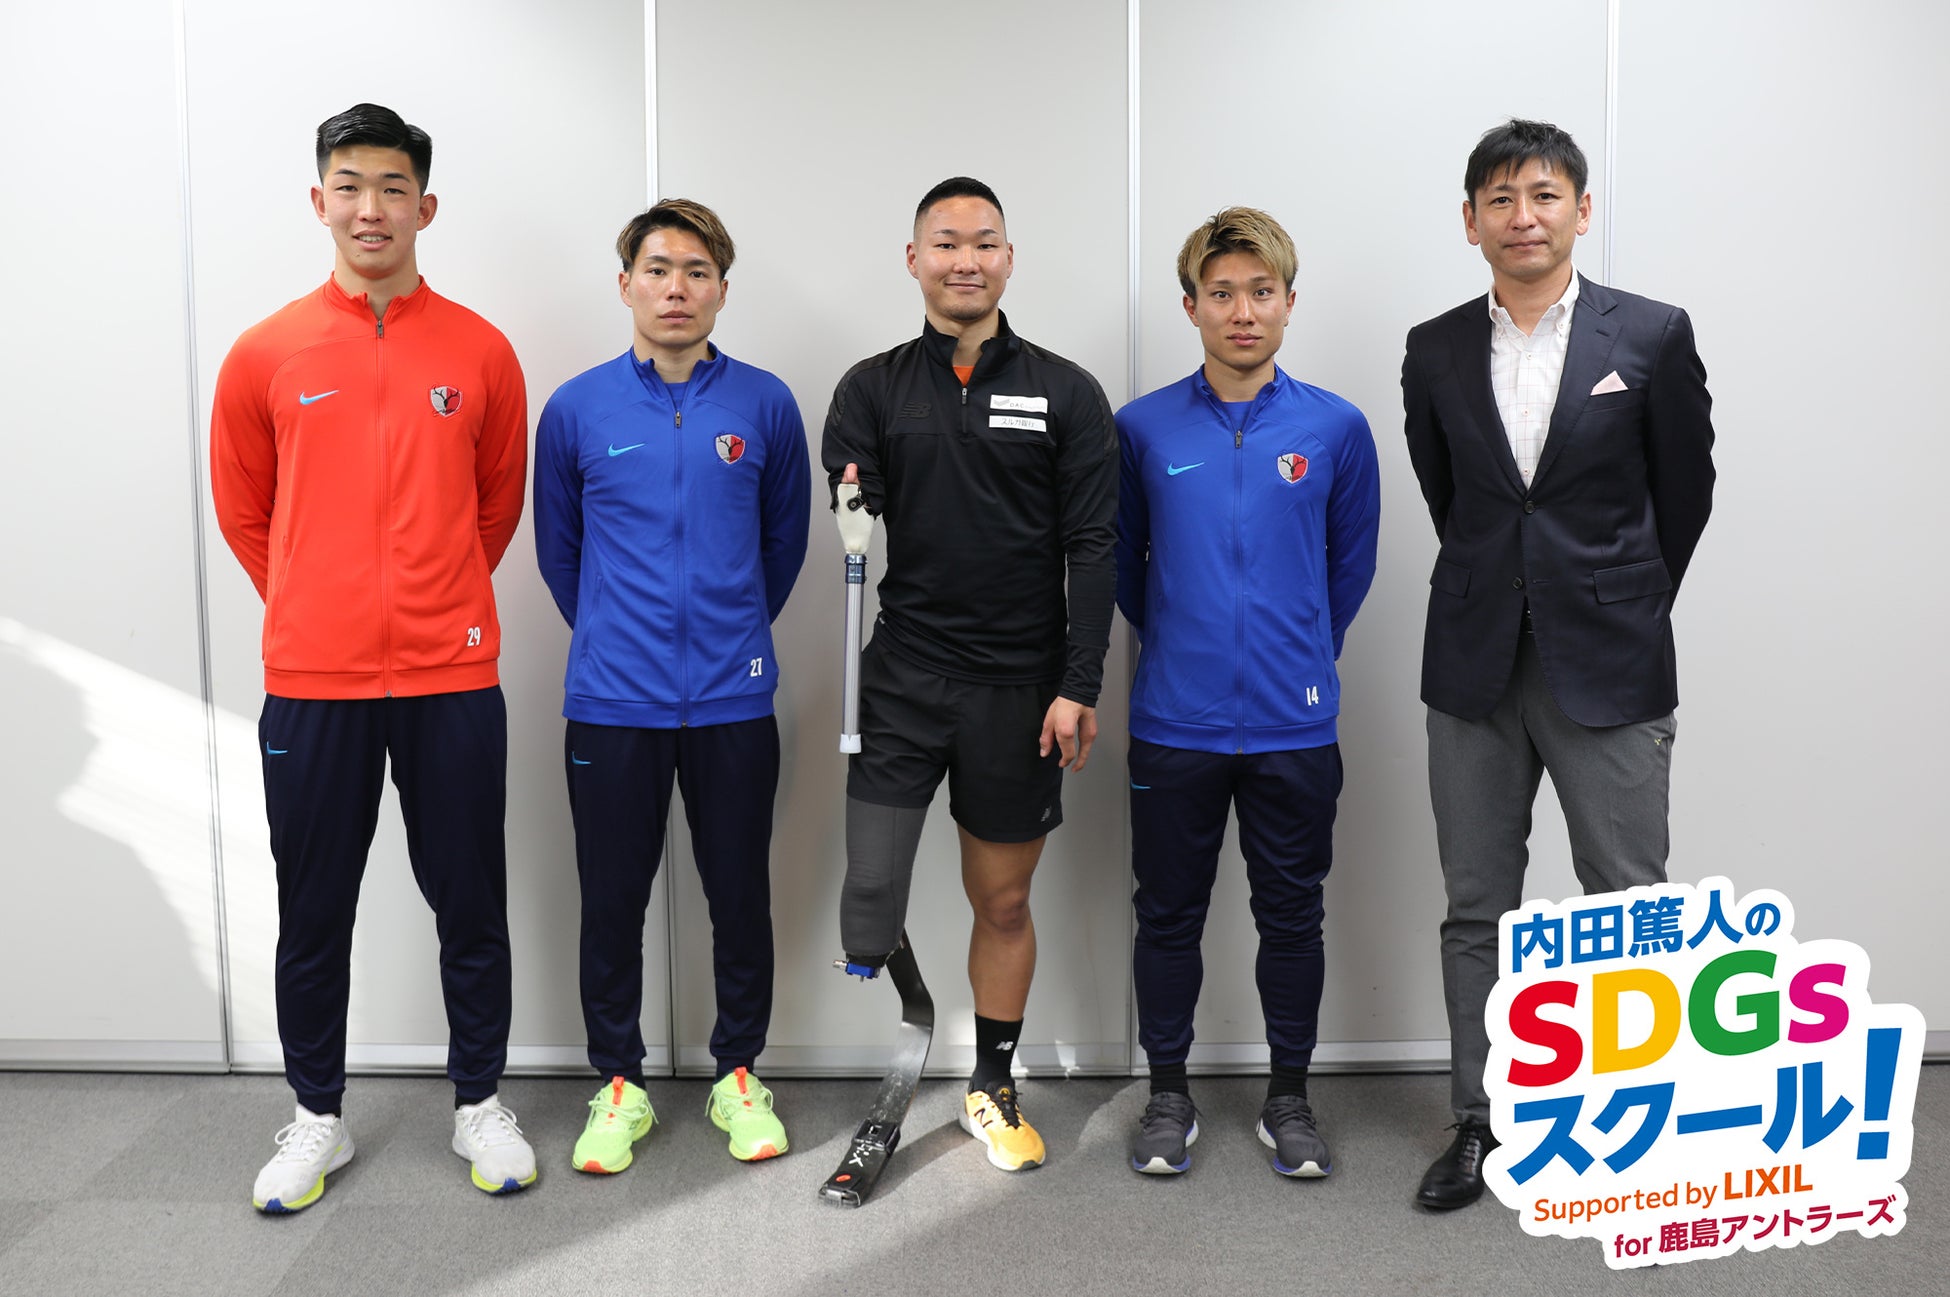 内田篤人さんからのミッションは“多様性への理解”　鹿島アントラーズの選手たちがスポーツ義足体験でSDGsを学ぶのサブ画像1